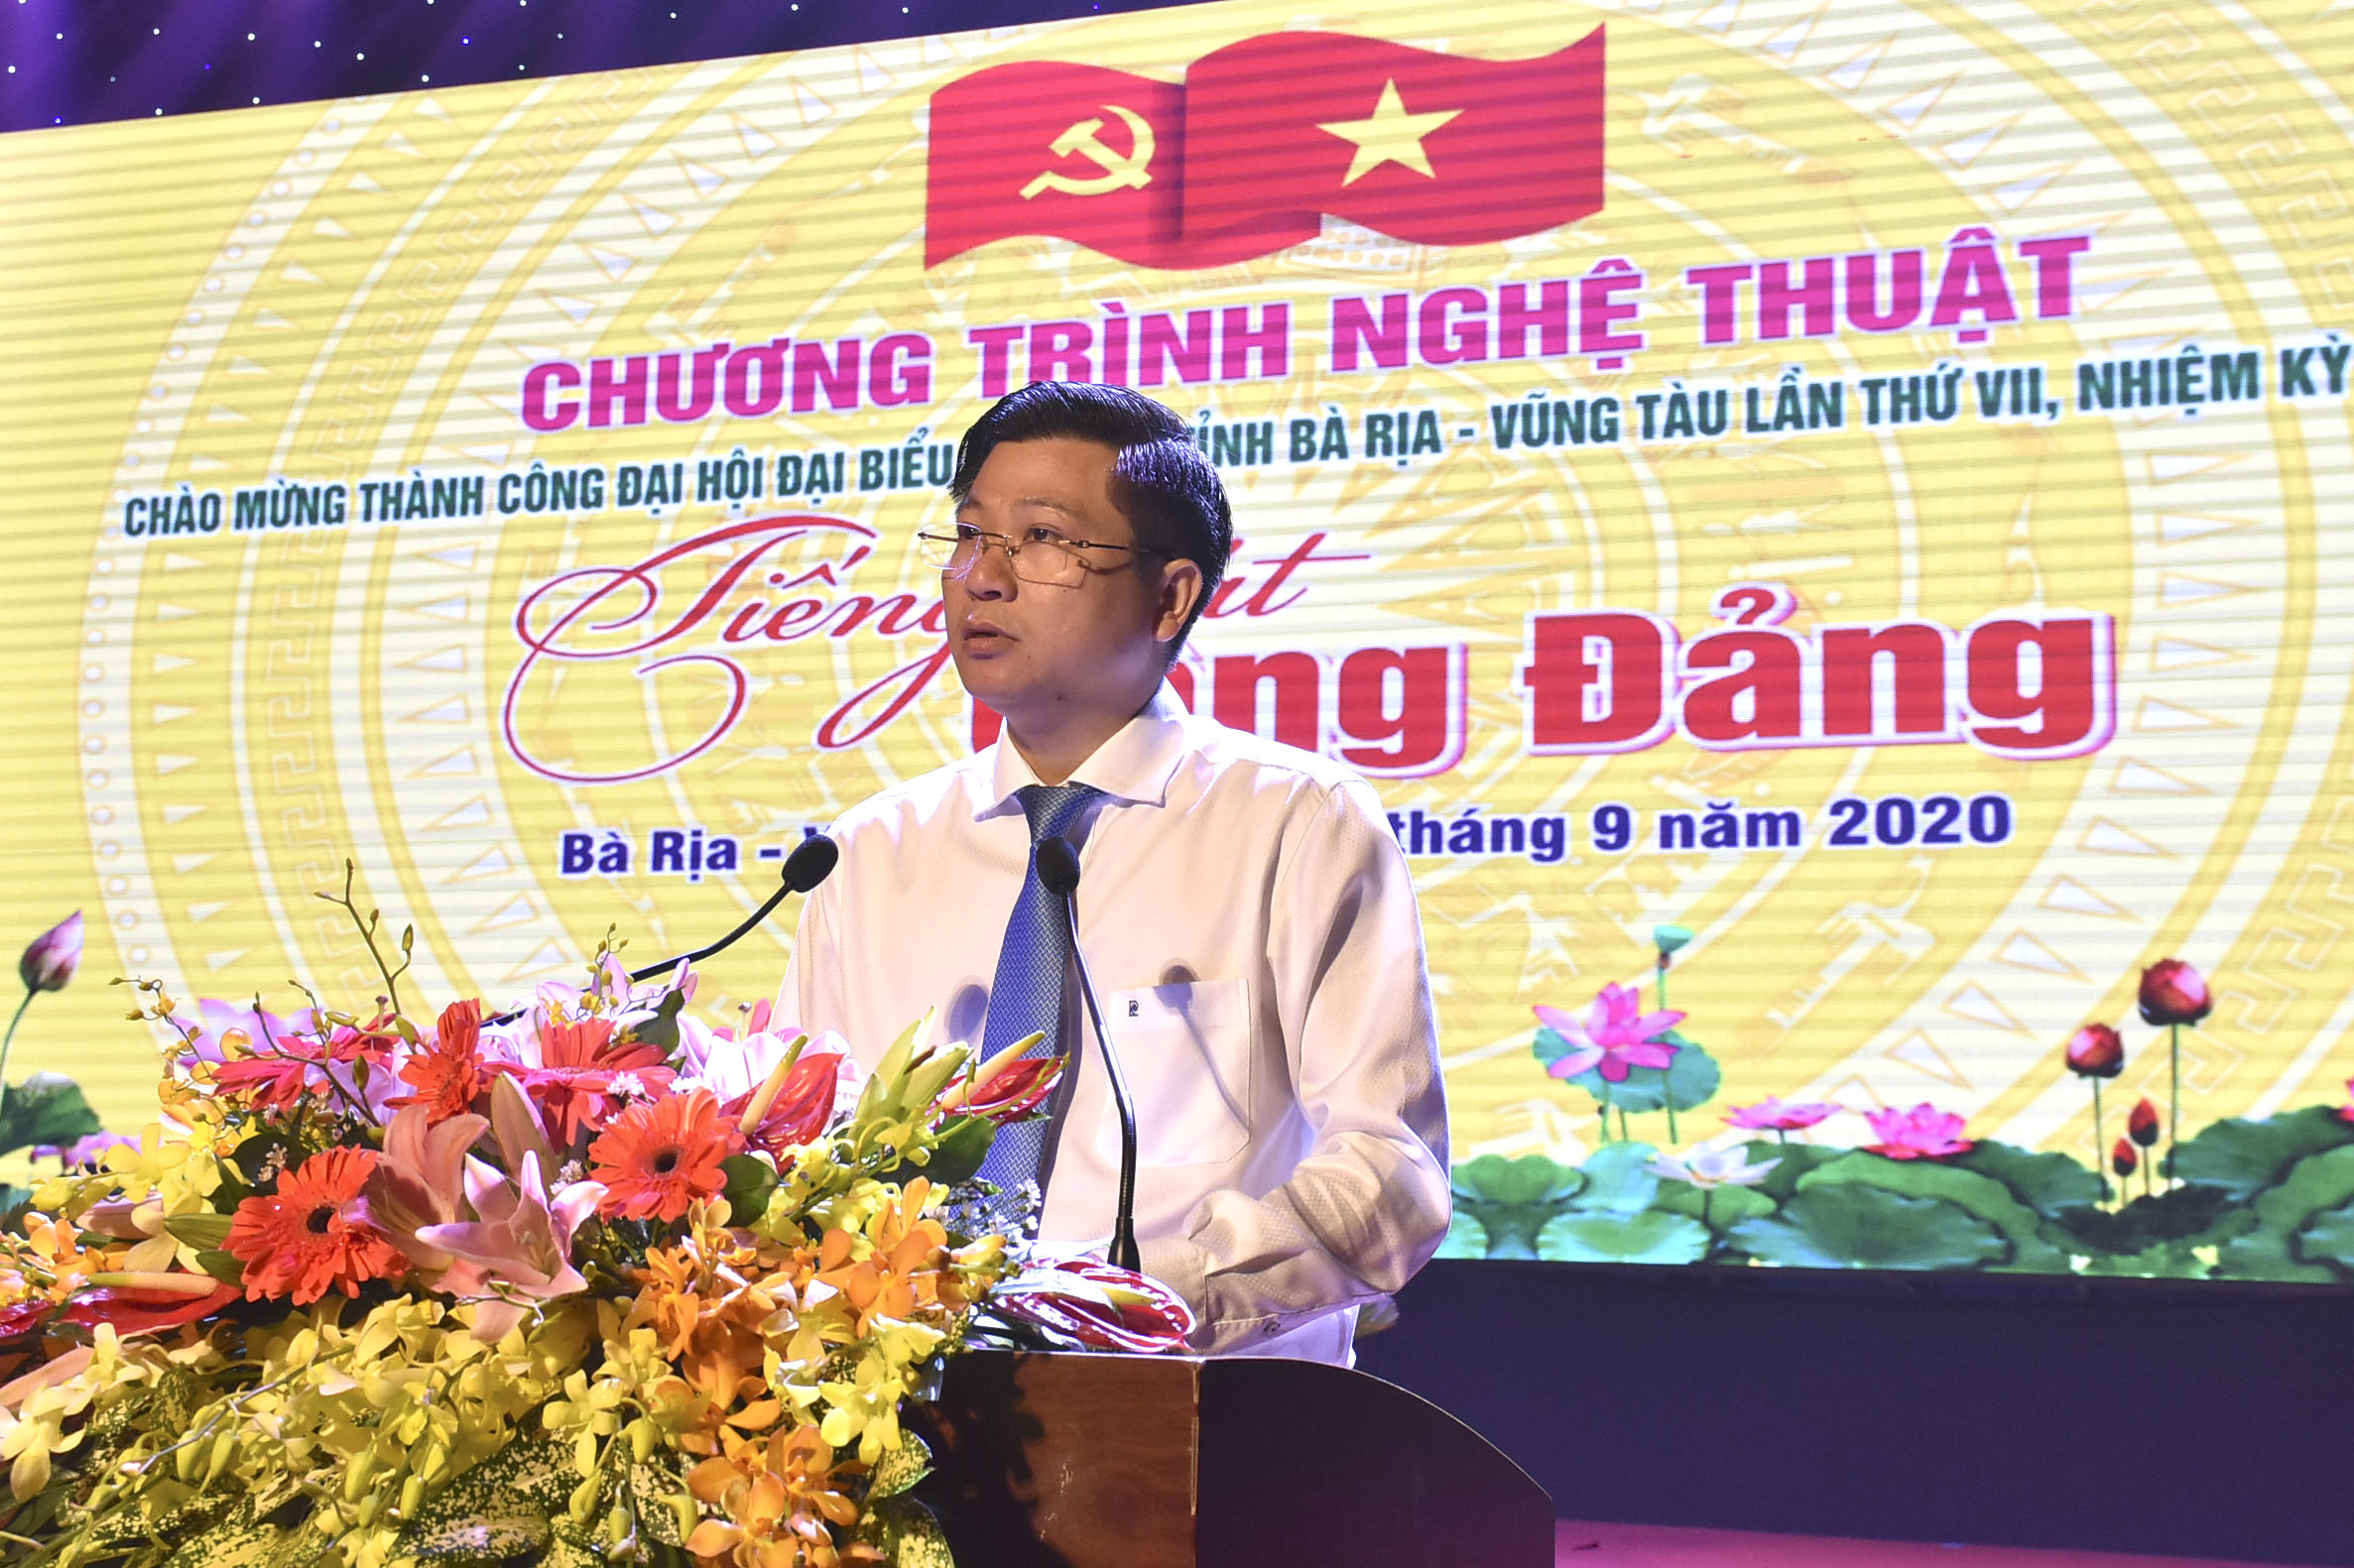 Đồng chí Trần Văn Tuấn, Phó Chủ tịch UBND tỉnh phát biểu khai mạc đêm biểu diễn nghệ thuật..